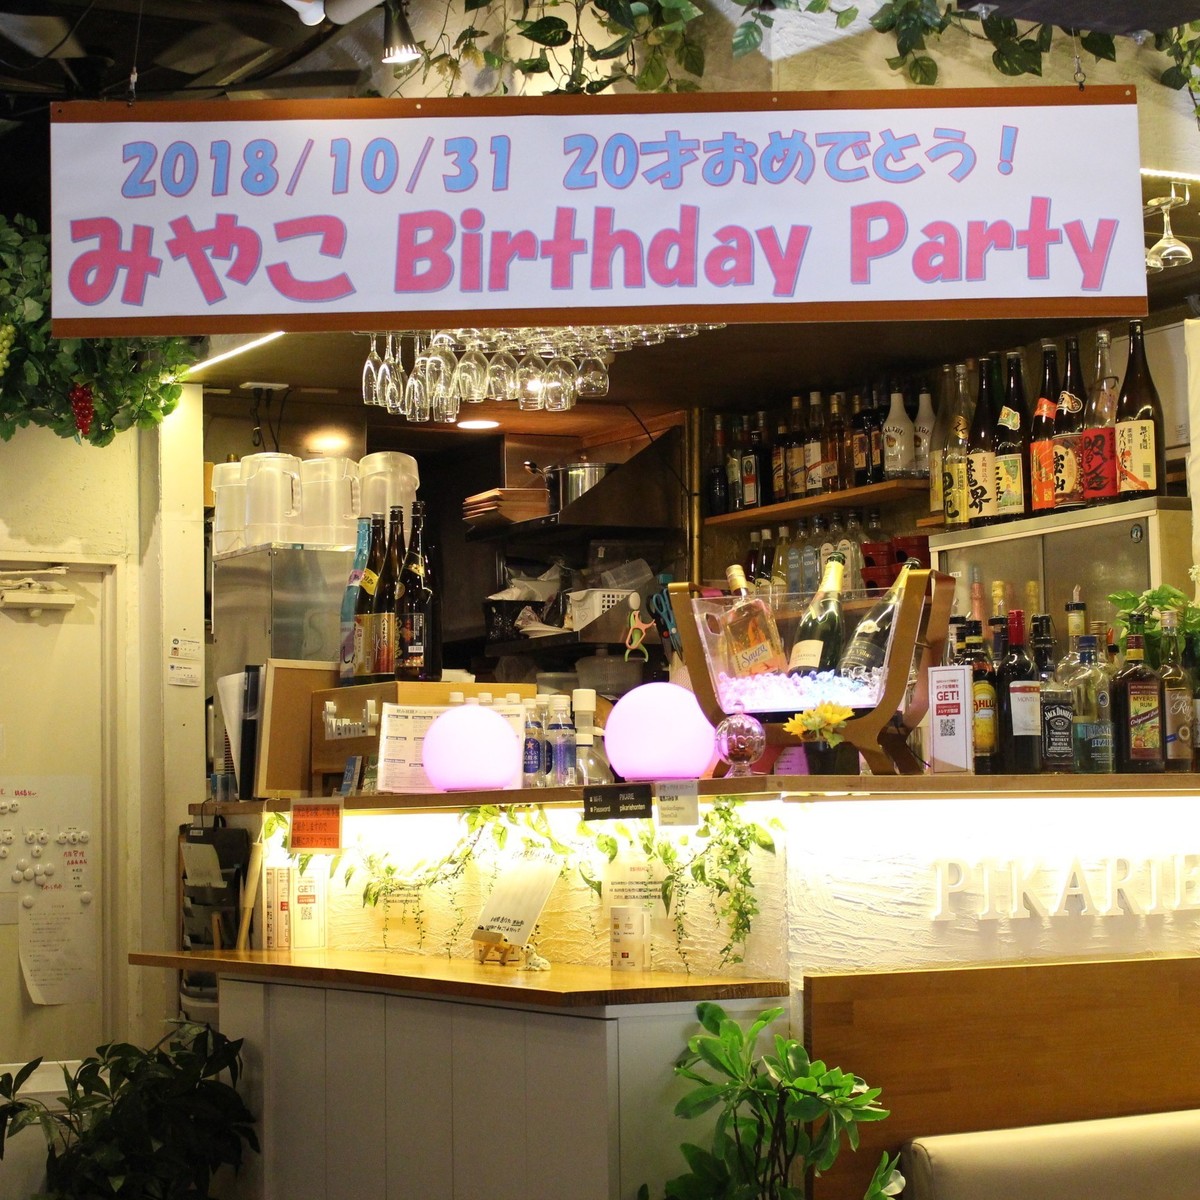 如果想在澀谷舉辦私人派對，我們推薦澀谷Picarie總店！私人派對免費橫幅製作服務！